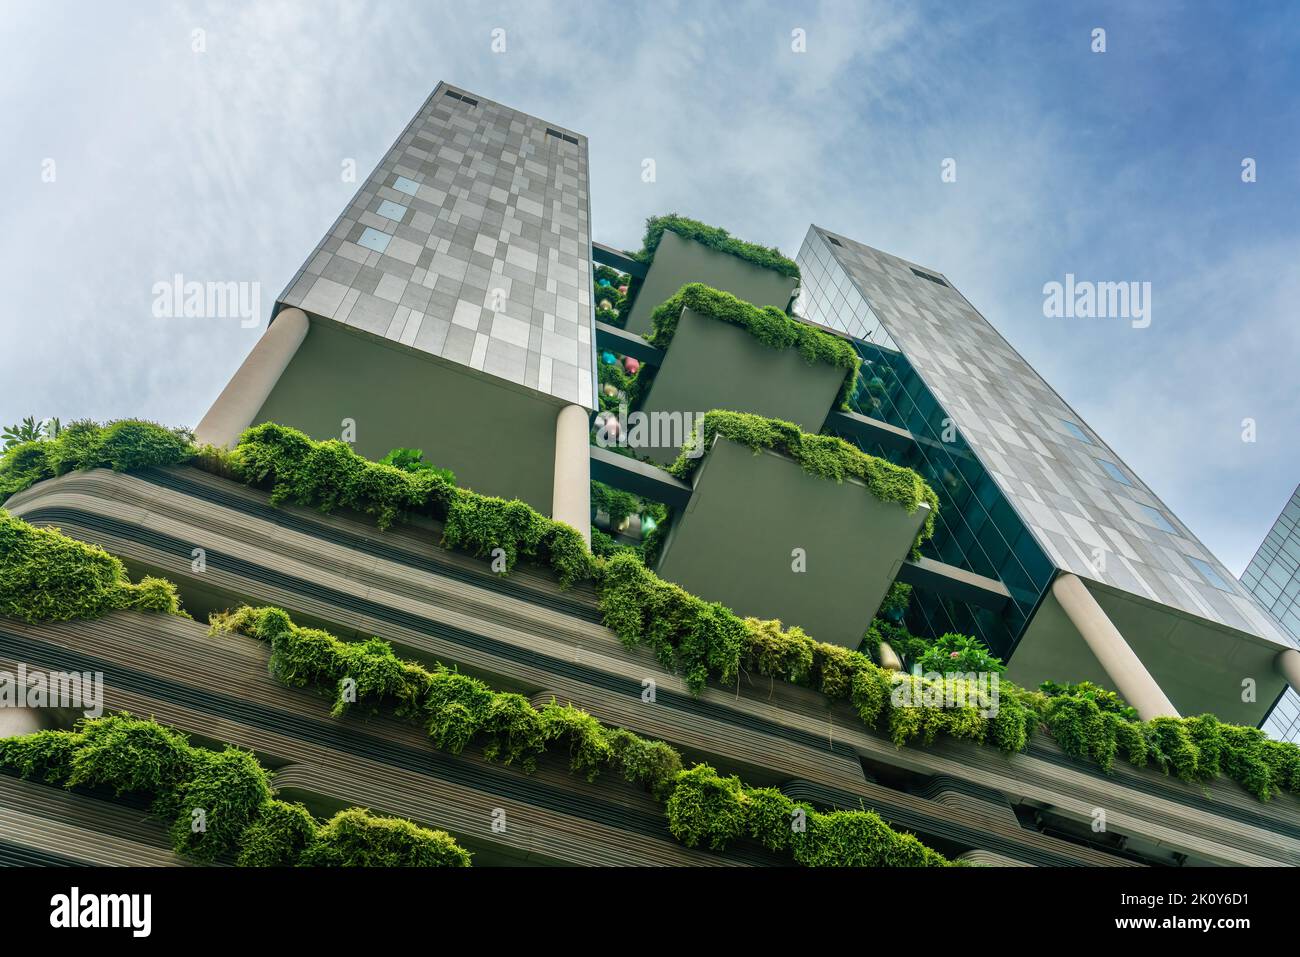 Singapur, 10. Juni 2018: Fassade des Gebäudes mit Blick auf die grüne Anlage Stockfoto